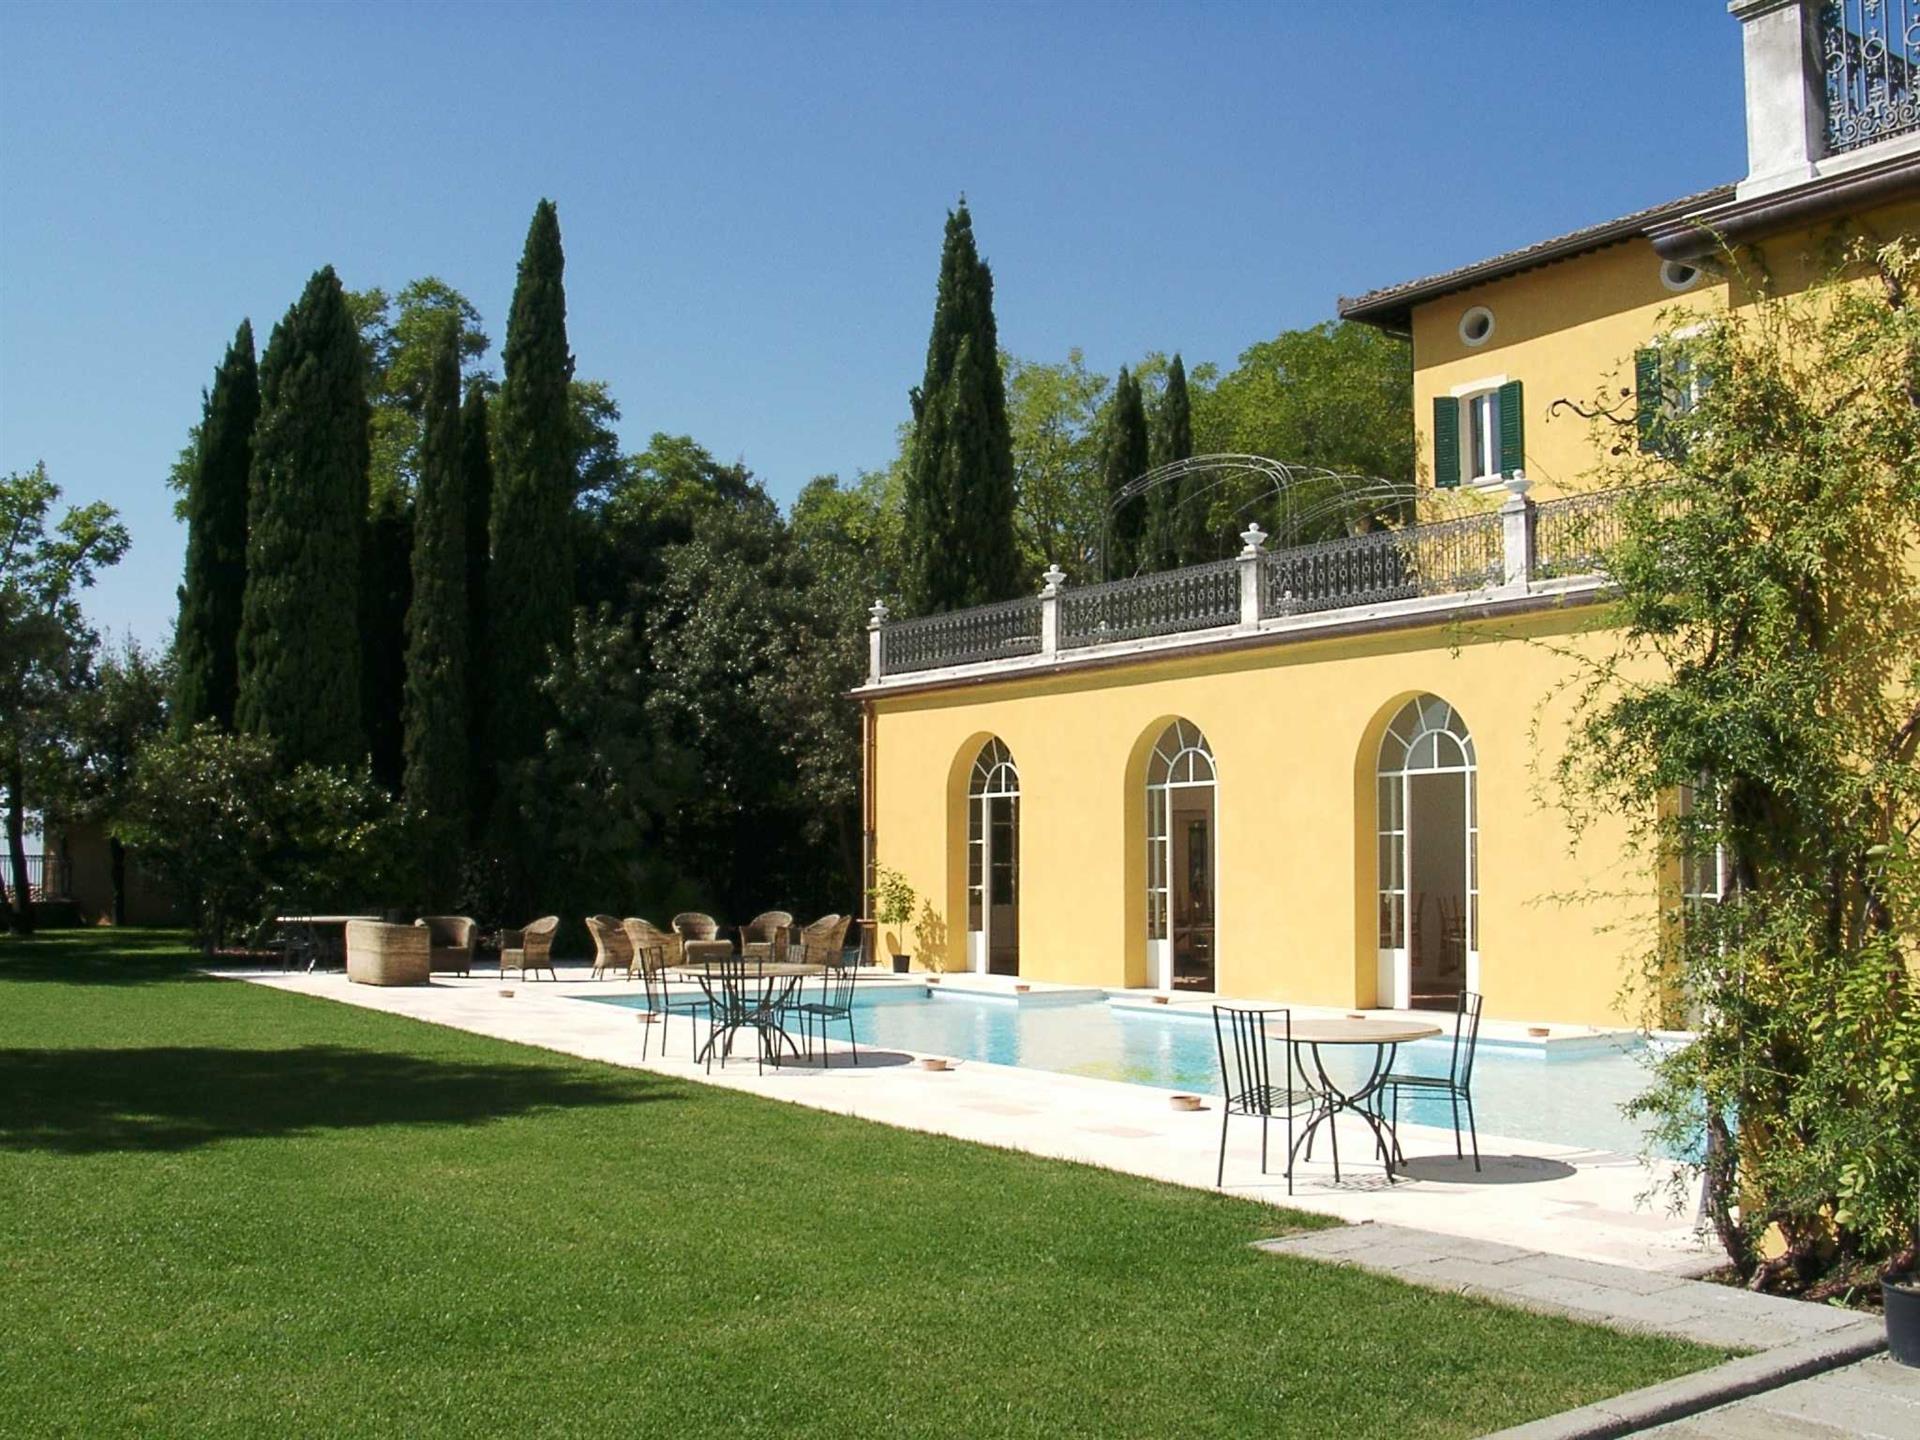 Luxurious Historic Villa in Umbria